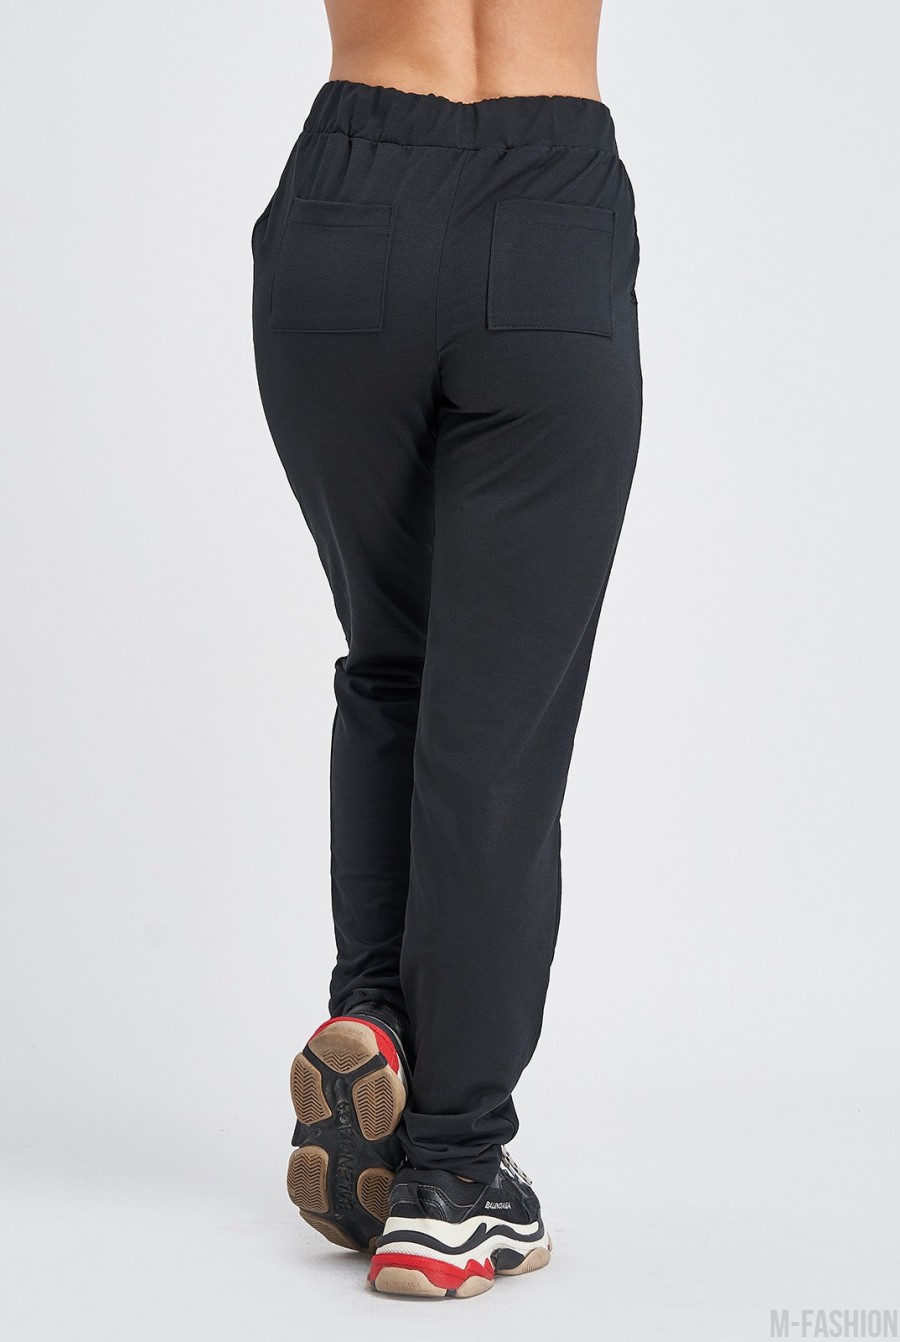 Черные штаны с карманами выполненные из трикотажа- Фото 5